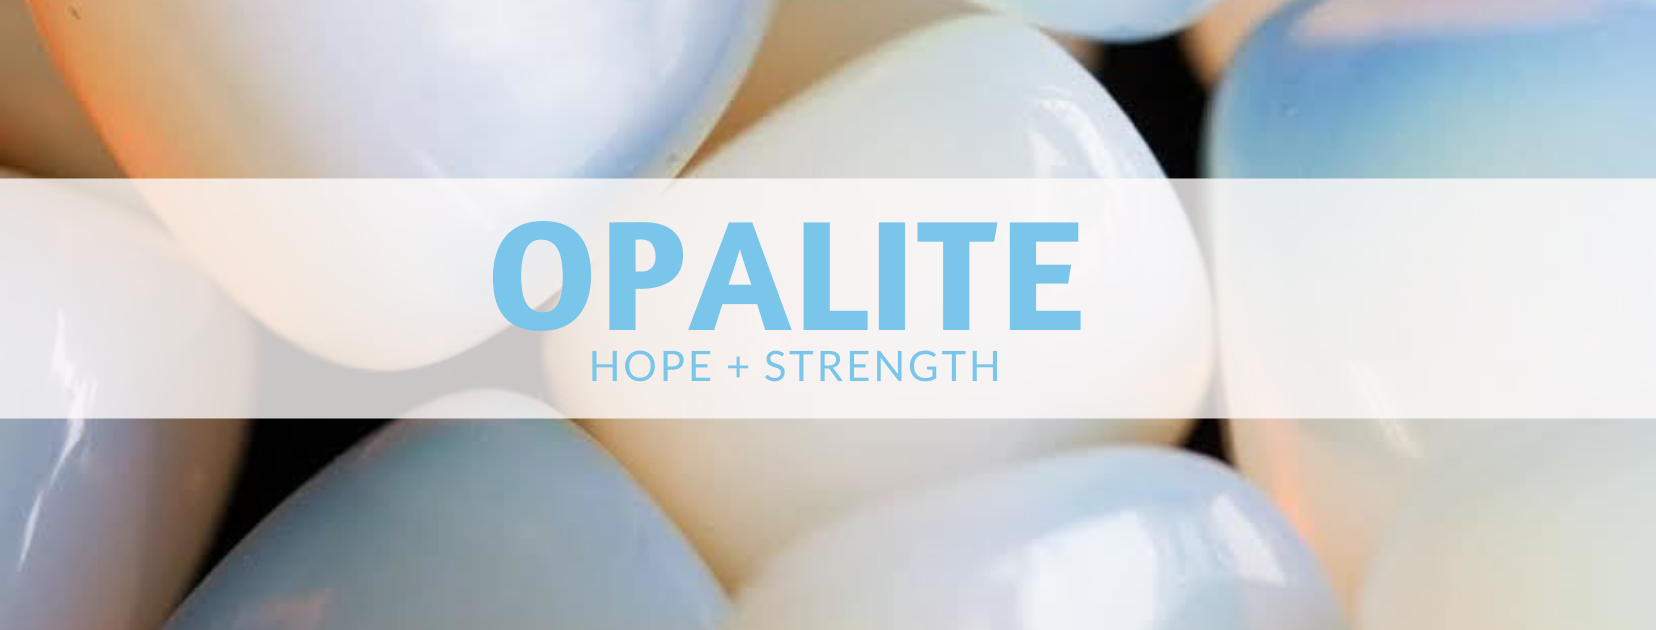 Propiedades curativas de Opalite | Opalita Significado | Beneficios de Opalite - Cristales Mágicos